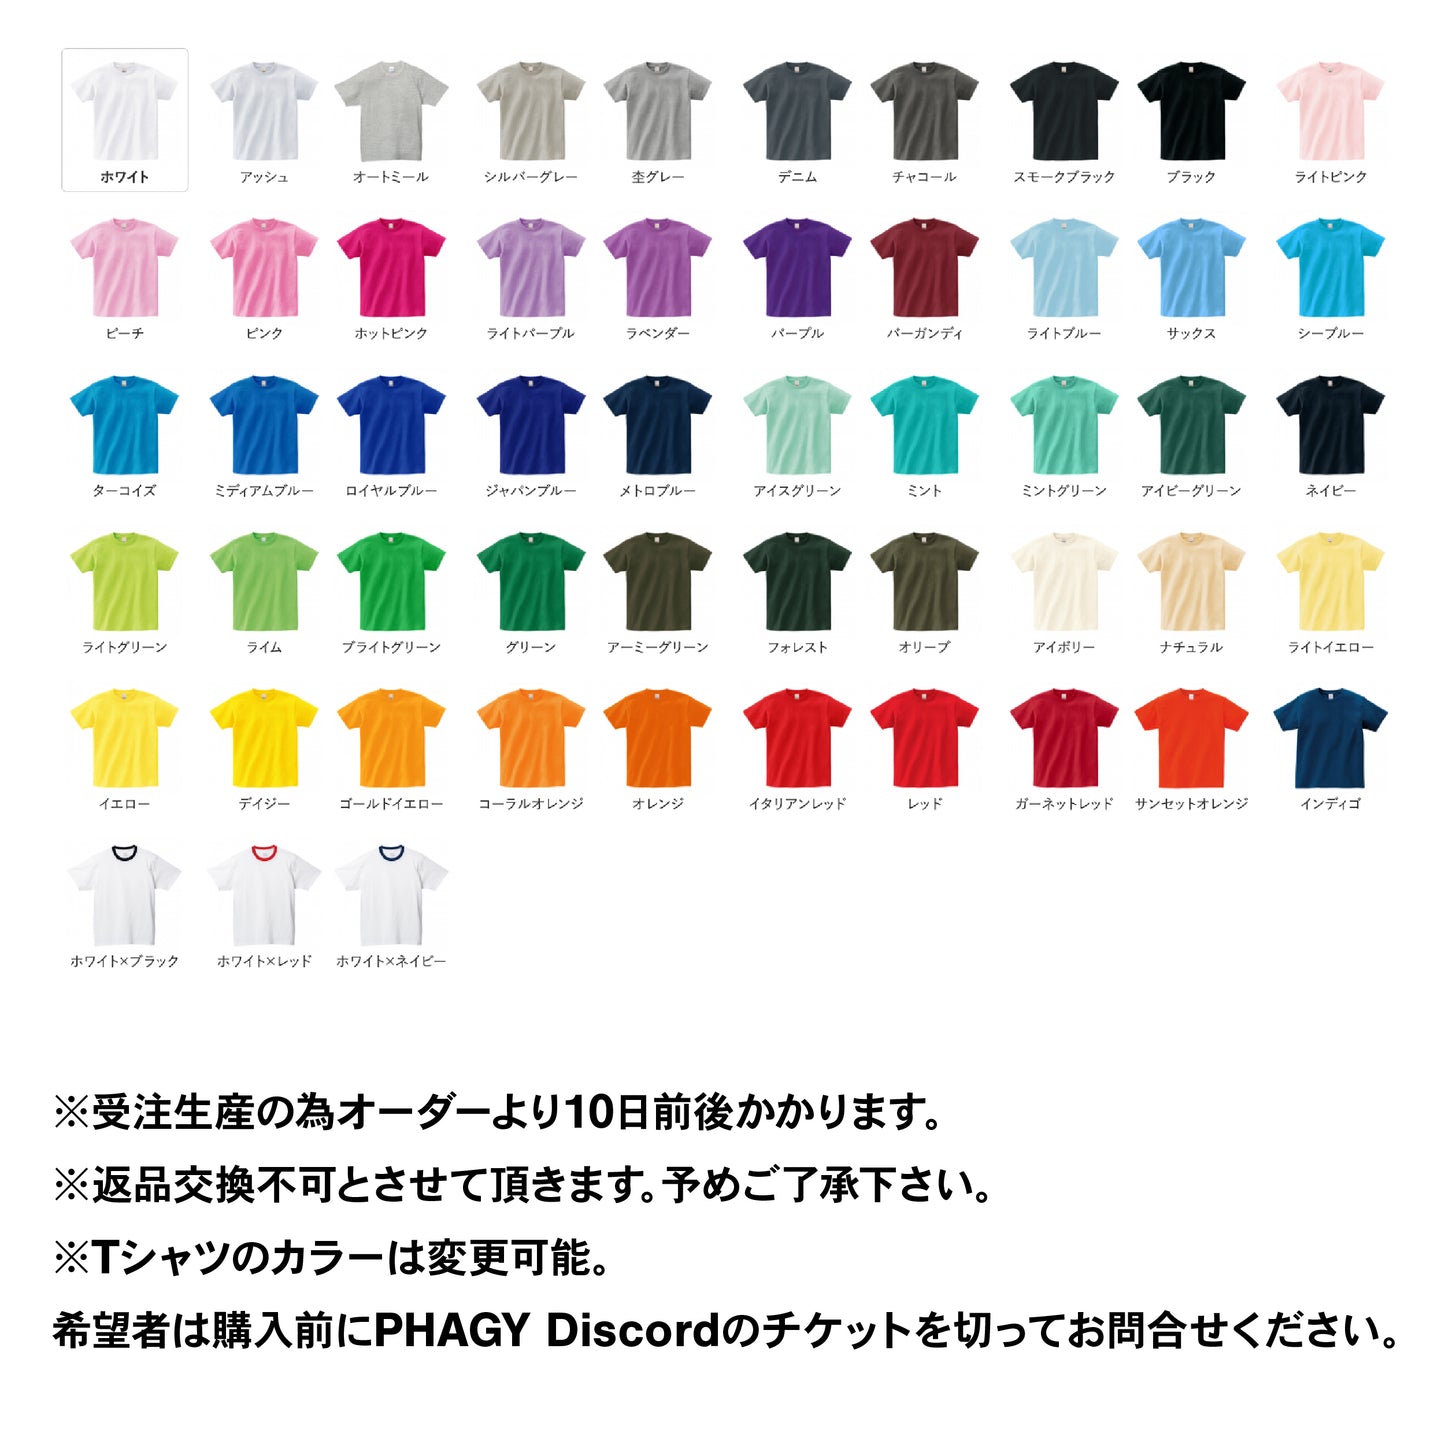 【Anonymask】ペストマスクTシャツ/BLK